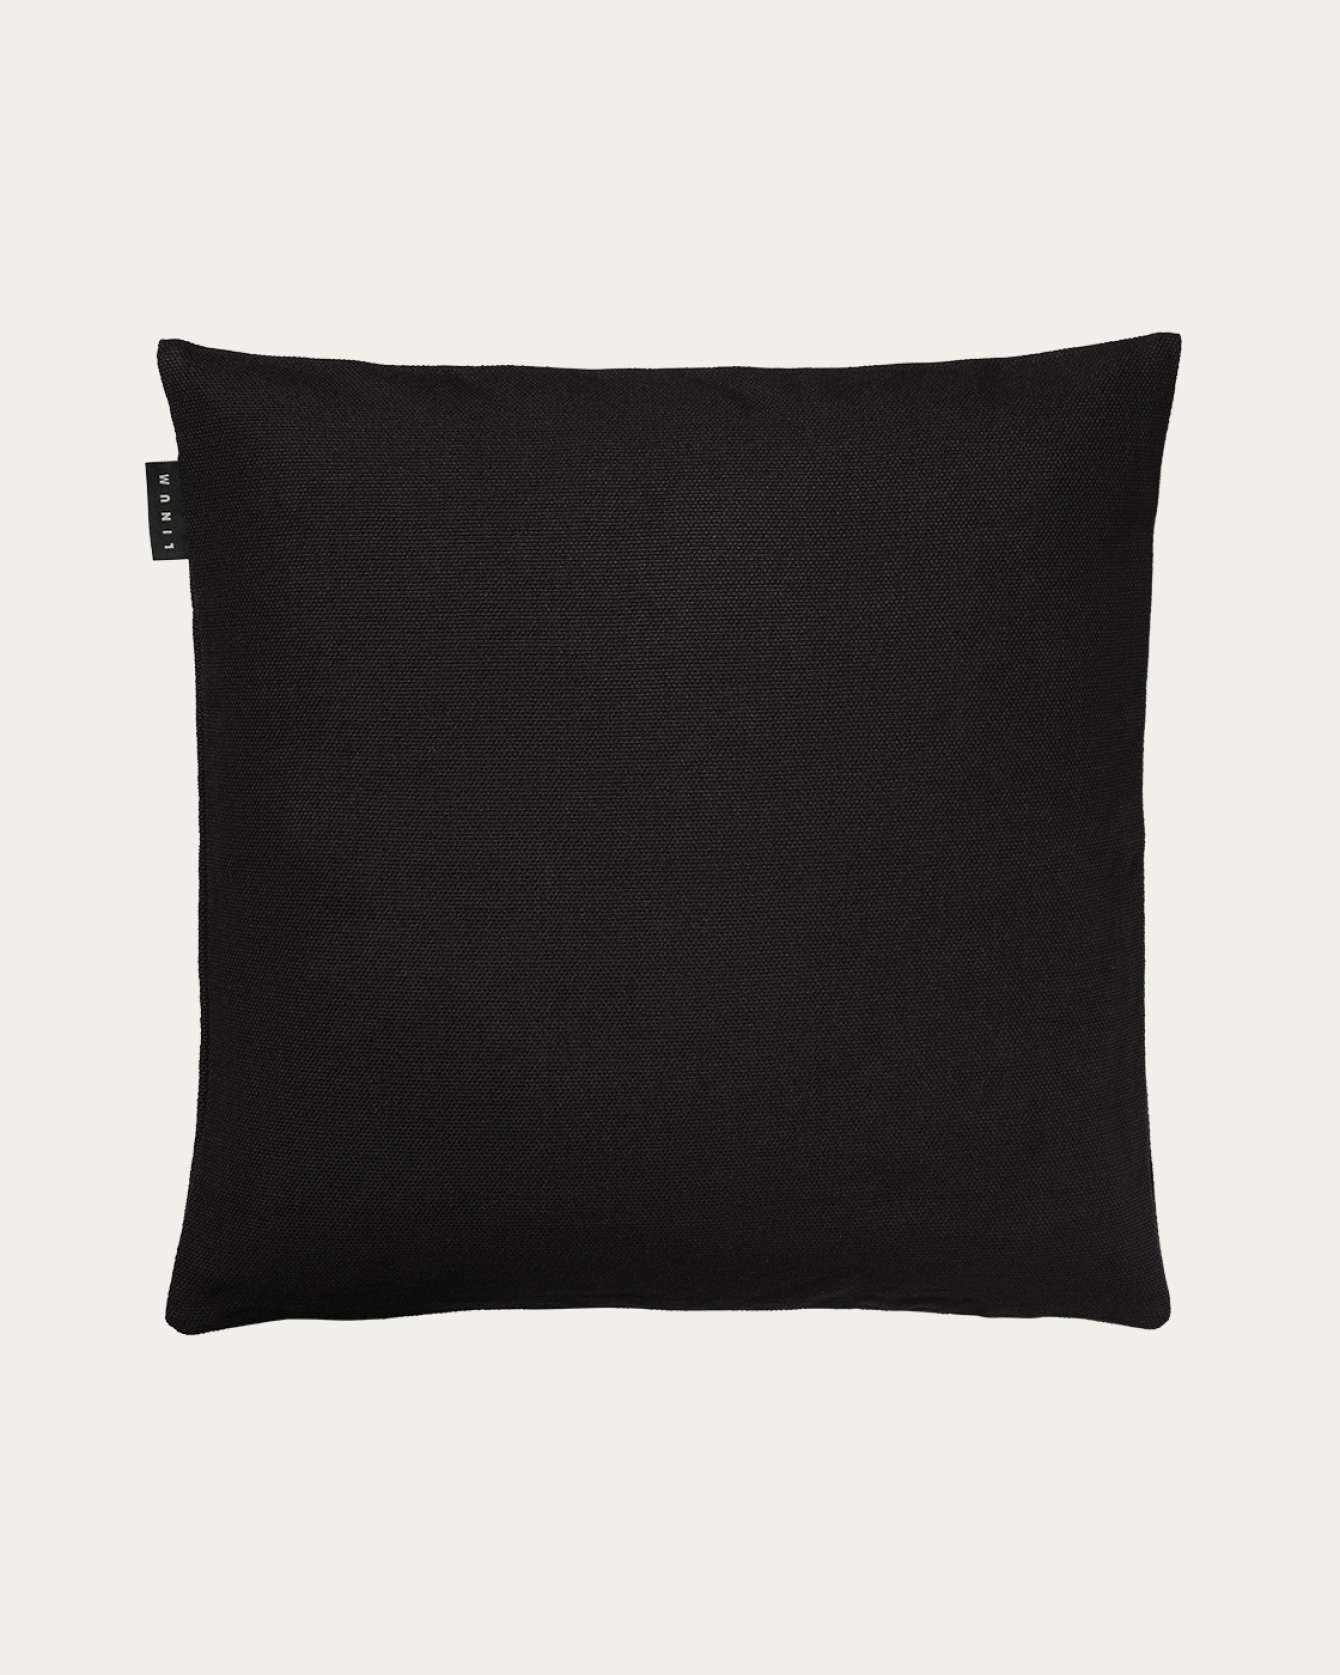 Produktbild schwarz PEPPER Kissenhülle aus weicher Baumwolle von LINUM DESIGN. Einfach zu waschen und langlebig für Generationen. Größe 50x50 cm.